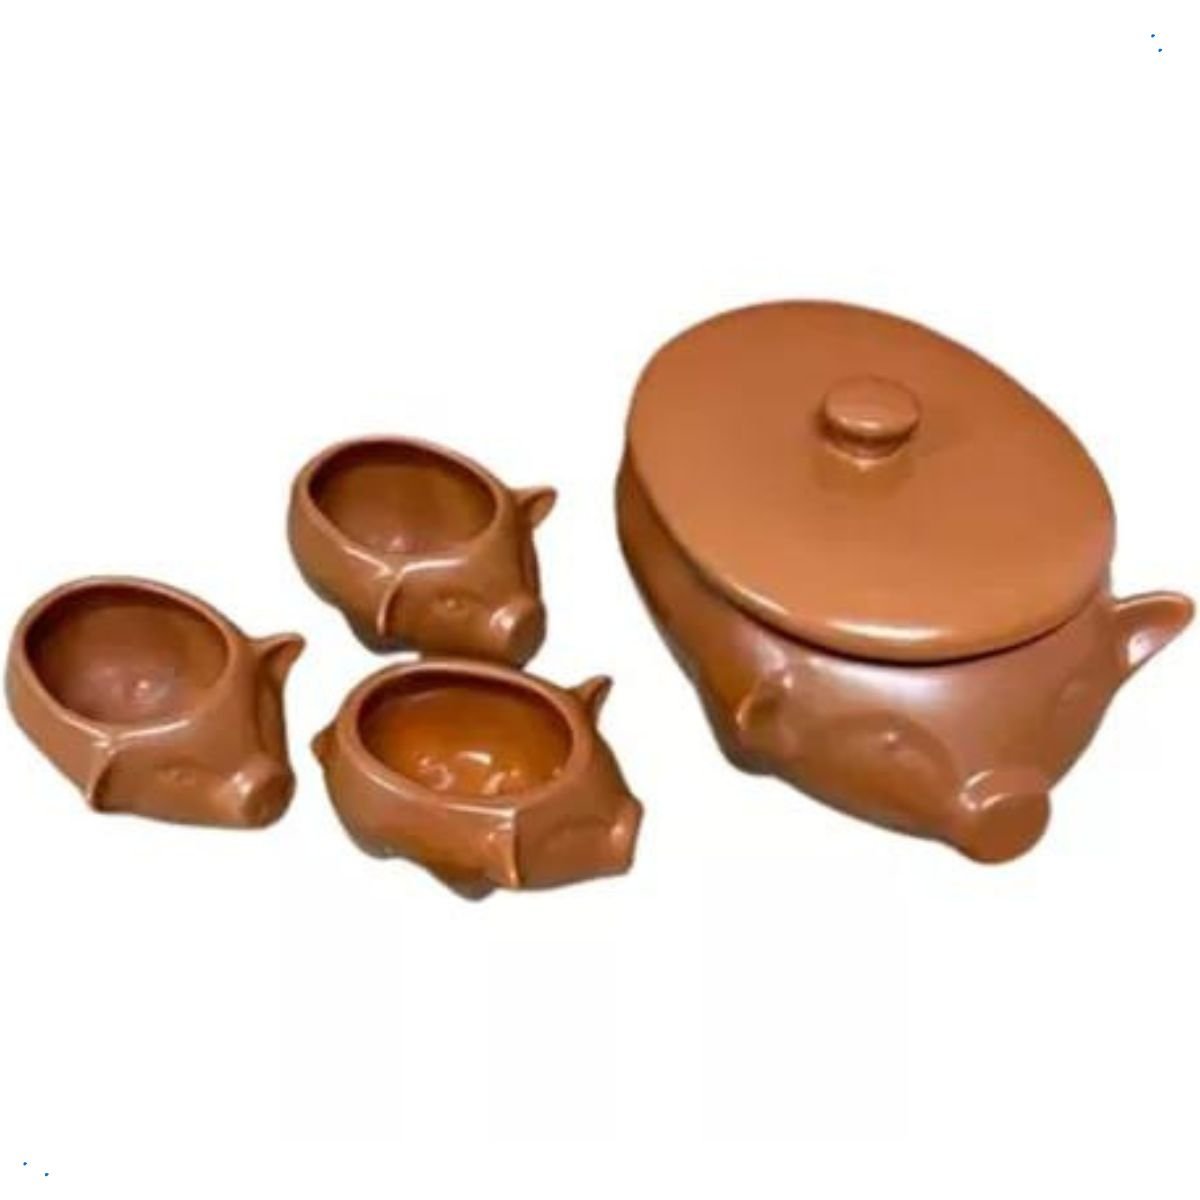 Kit Feijoada Caldo Sopeira Bowl Cerâmica 4 Peças Casa Dami Kit para Feijoada, Kit Feijoada, Sopeira, - 1